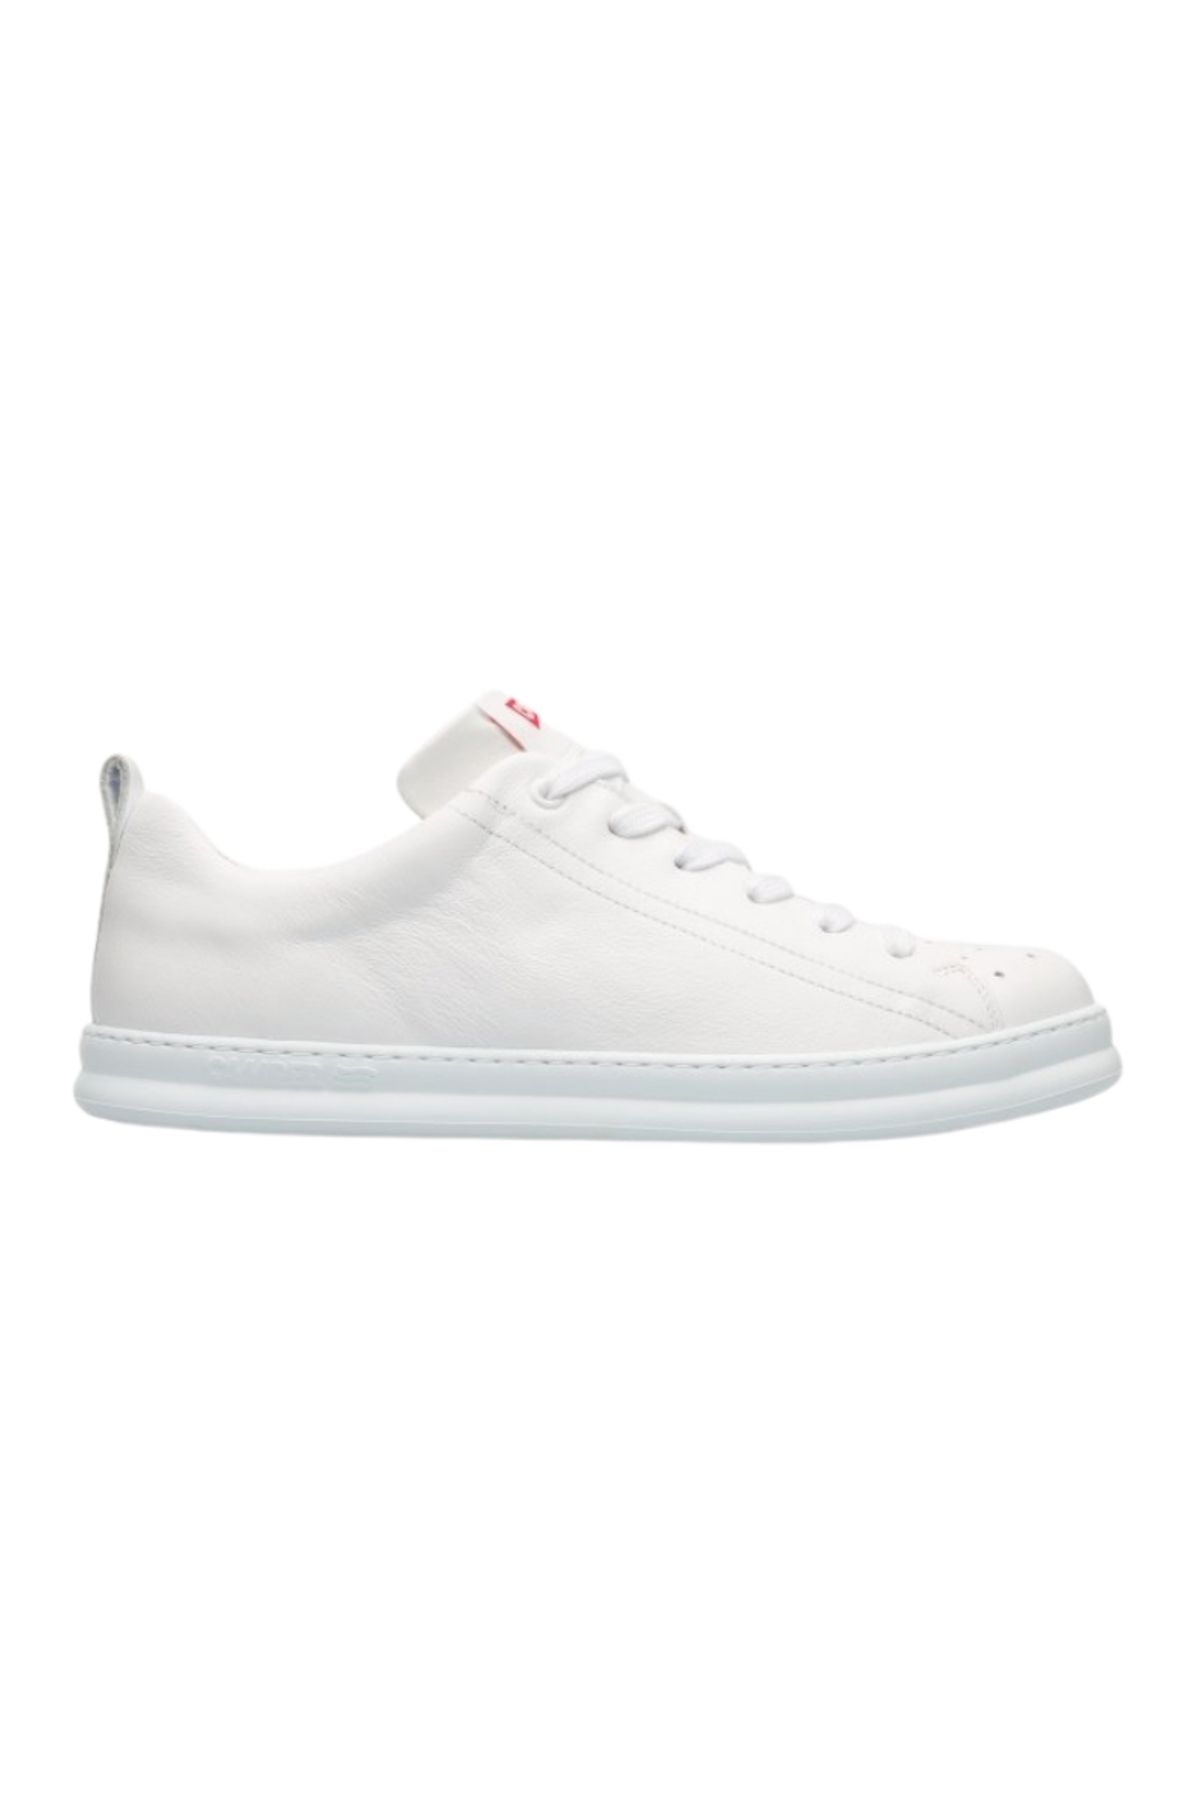 CAMPER Erkek Beyaz Casual Ayakkabı K100226-052-beyaz